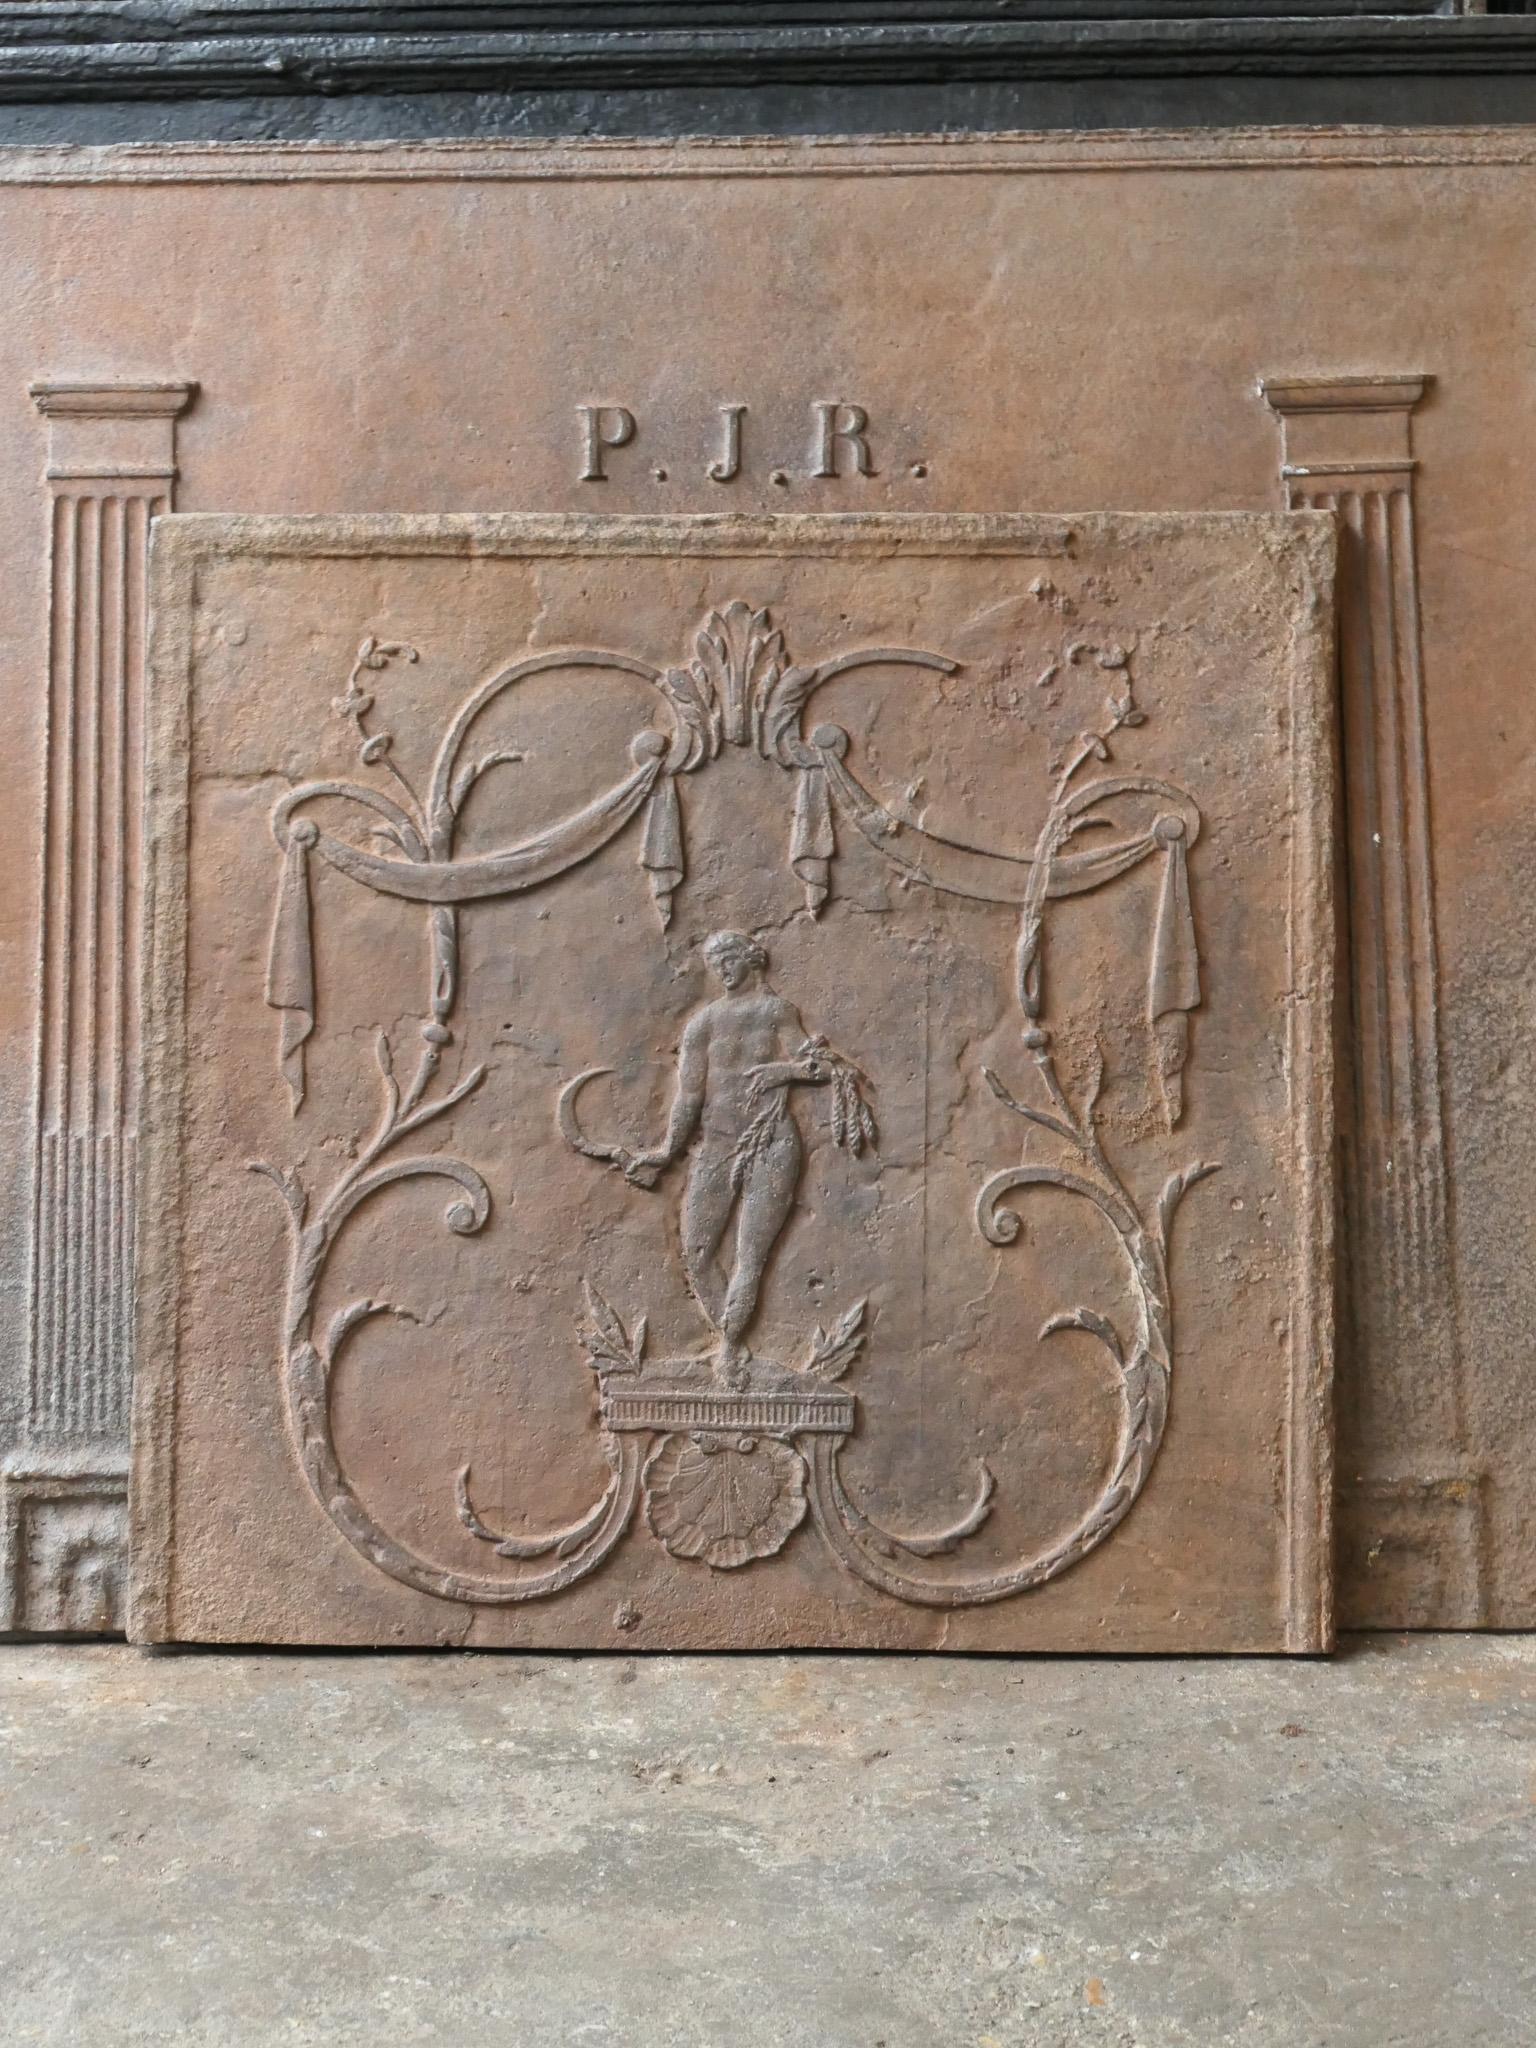 Französische neoklassizistische Kaminplatte aus dem 19. Jahrhundert mit der Göttin Ceres. Göttin des Ackerbaus (insbesondere Getreide) und der mütterlichen Liebe.

Die Feuerrückwand hat eine natürliche braune Patina. Auf Anfrage kann er auch in